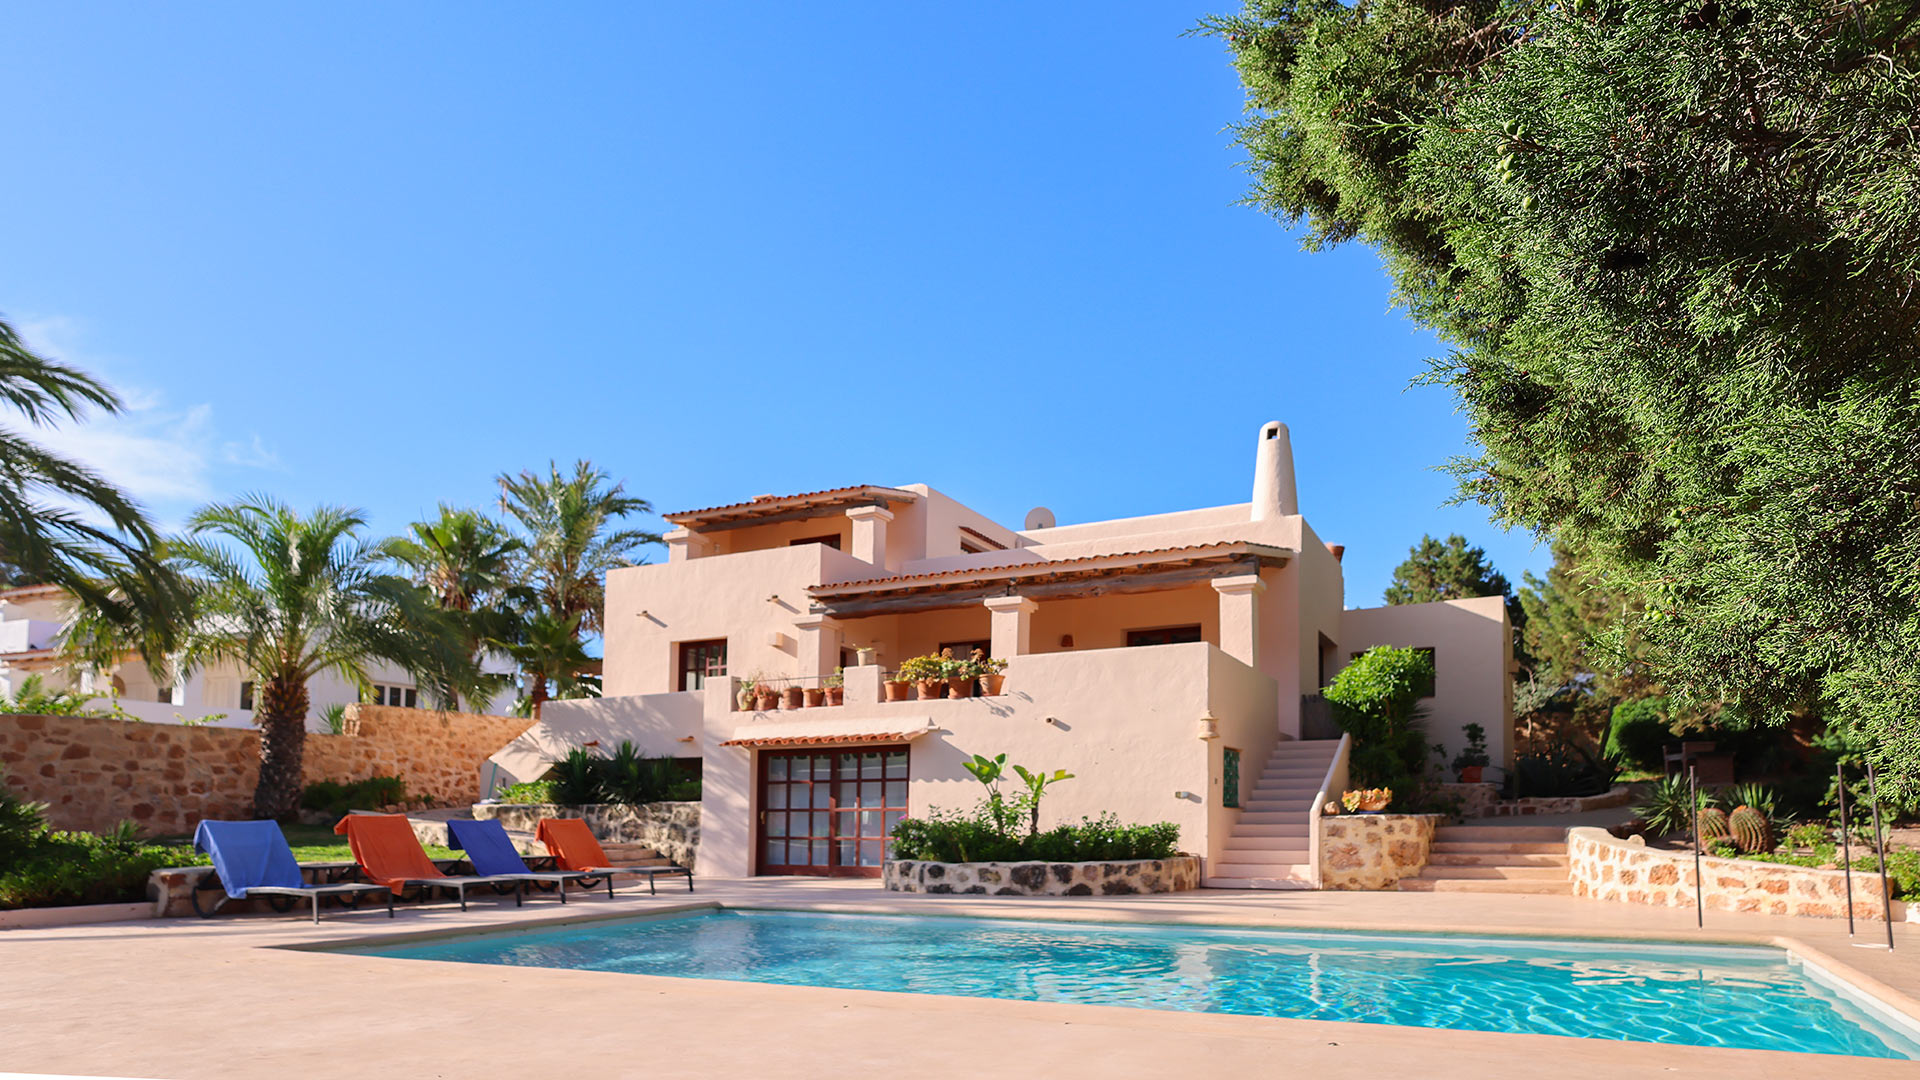 Villa Villa Rana, Rental in Ibiza